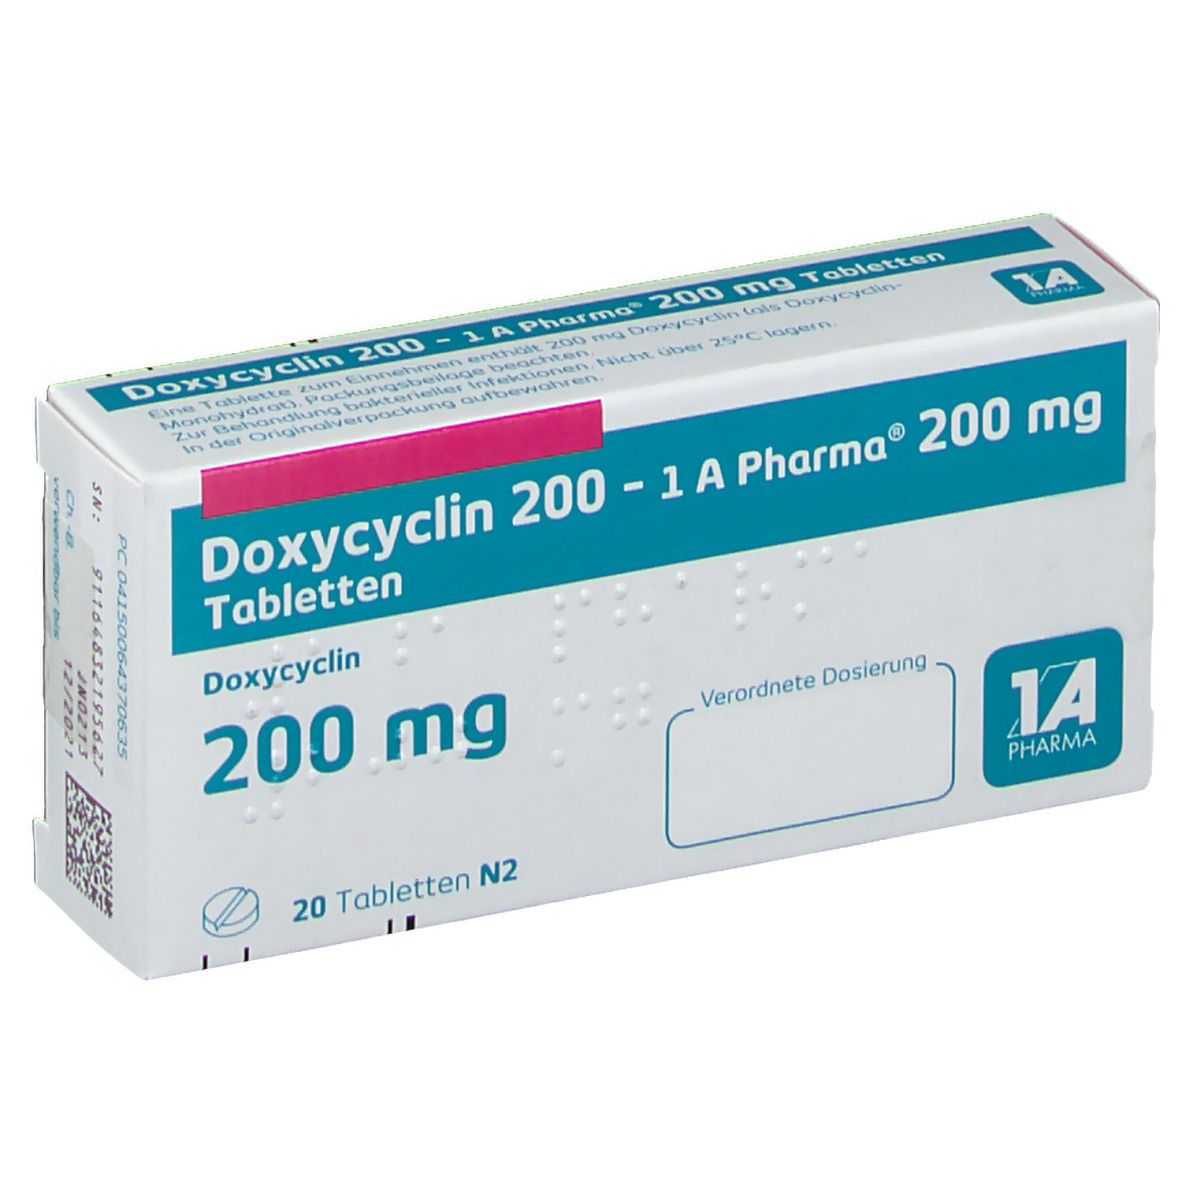 Doxycyclin 200 1A Pharma®